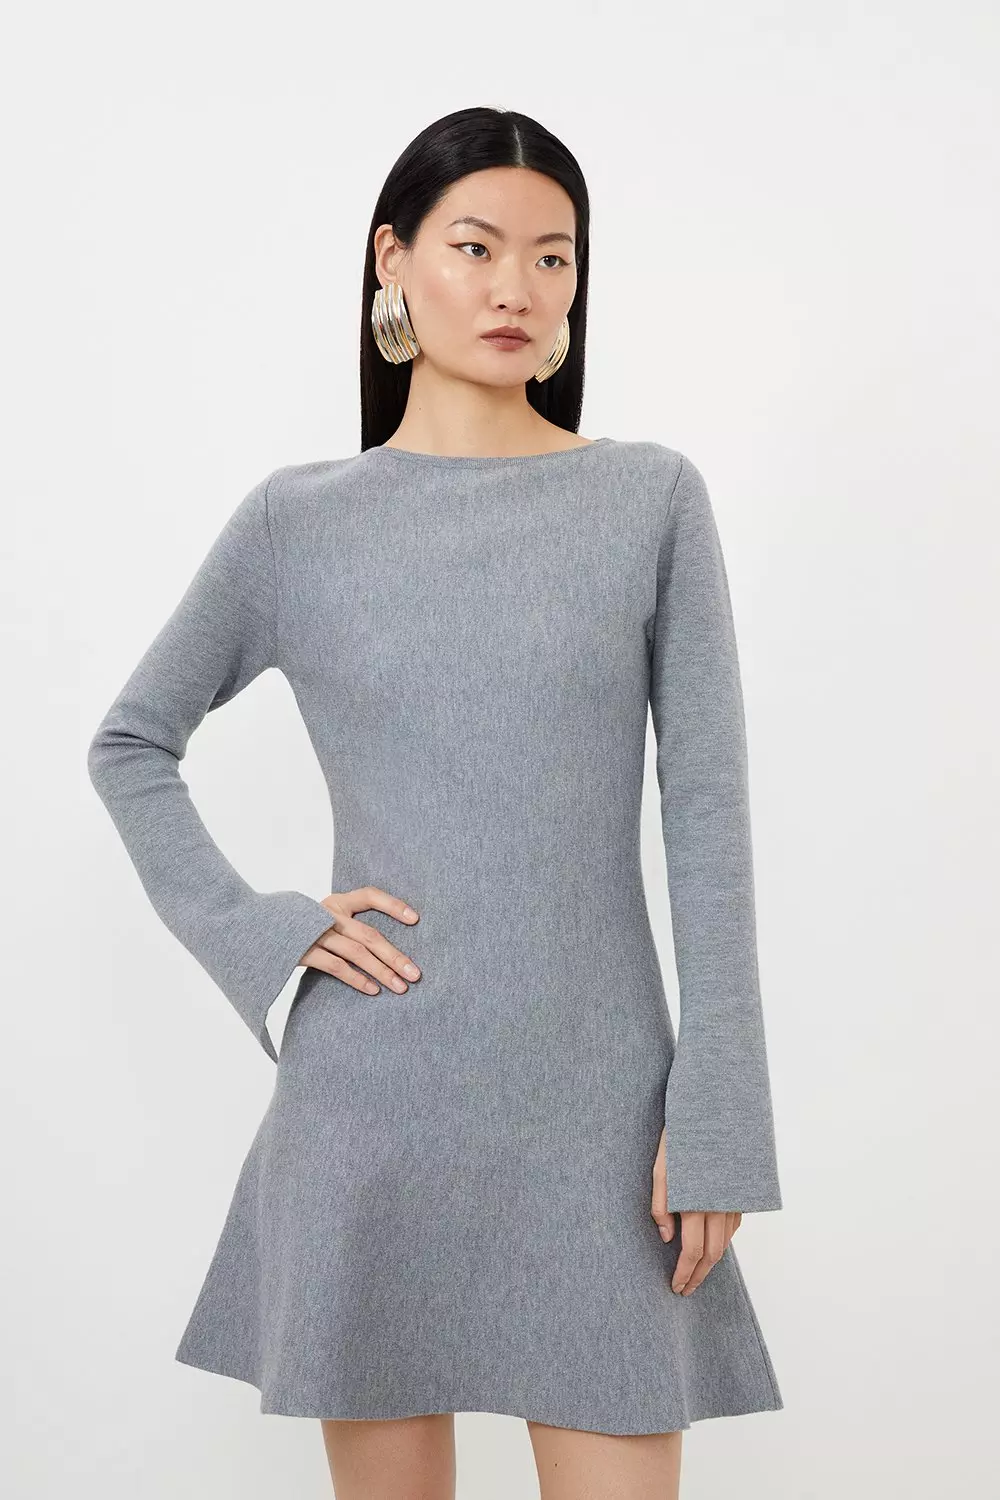 Compact Wool Look Knit Bell Sleeve Top | Karen Millen